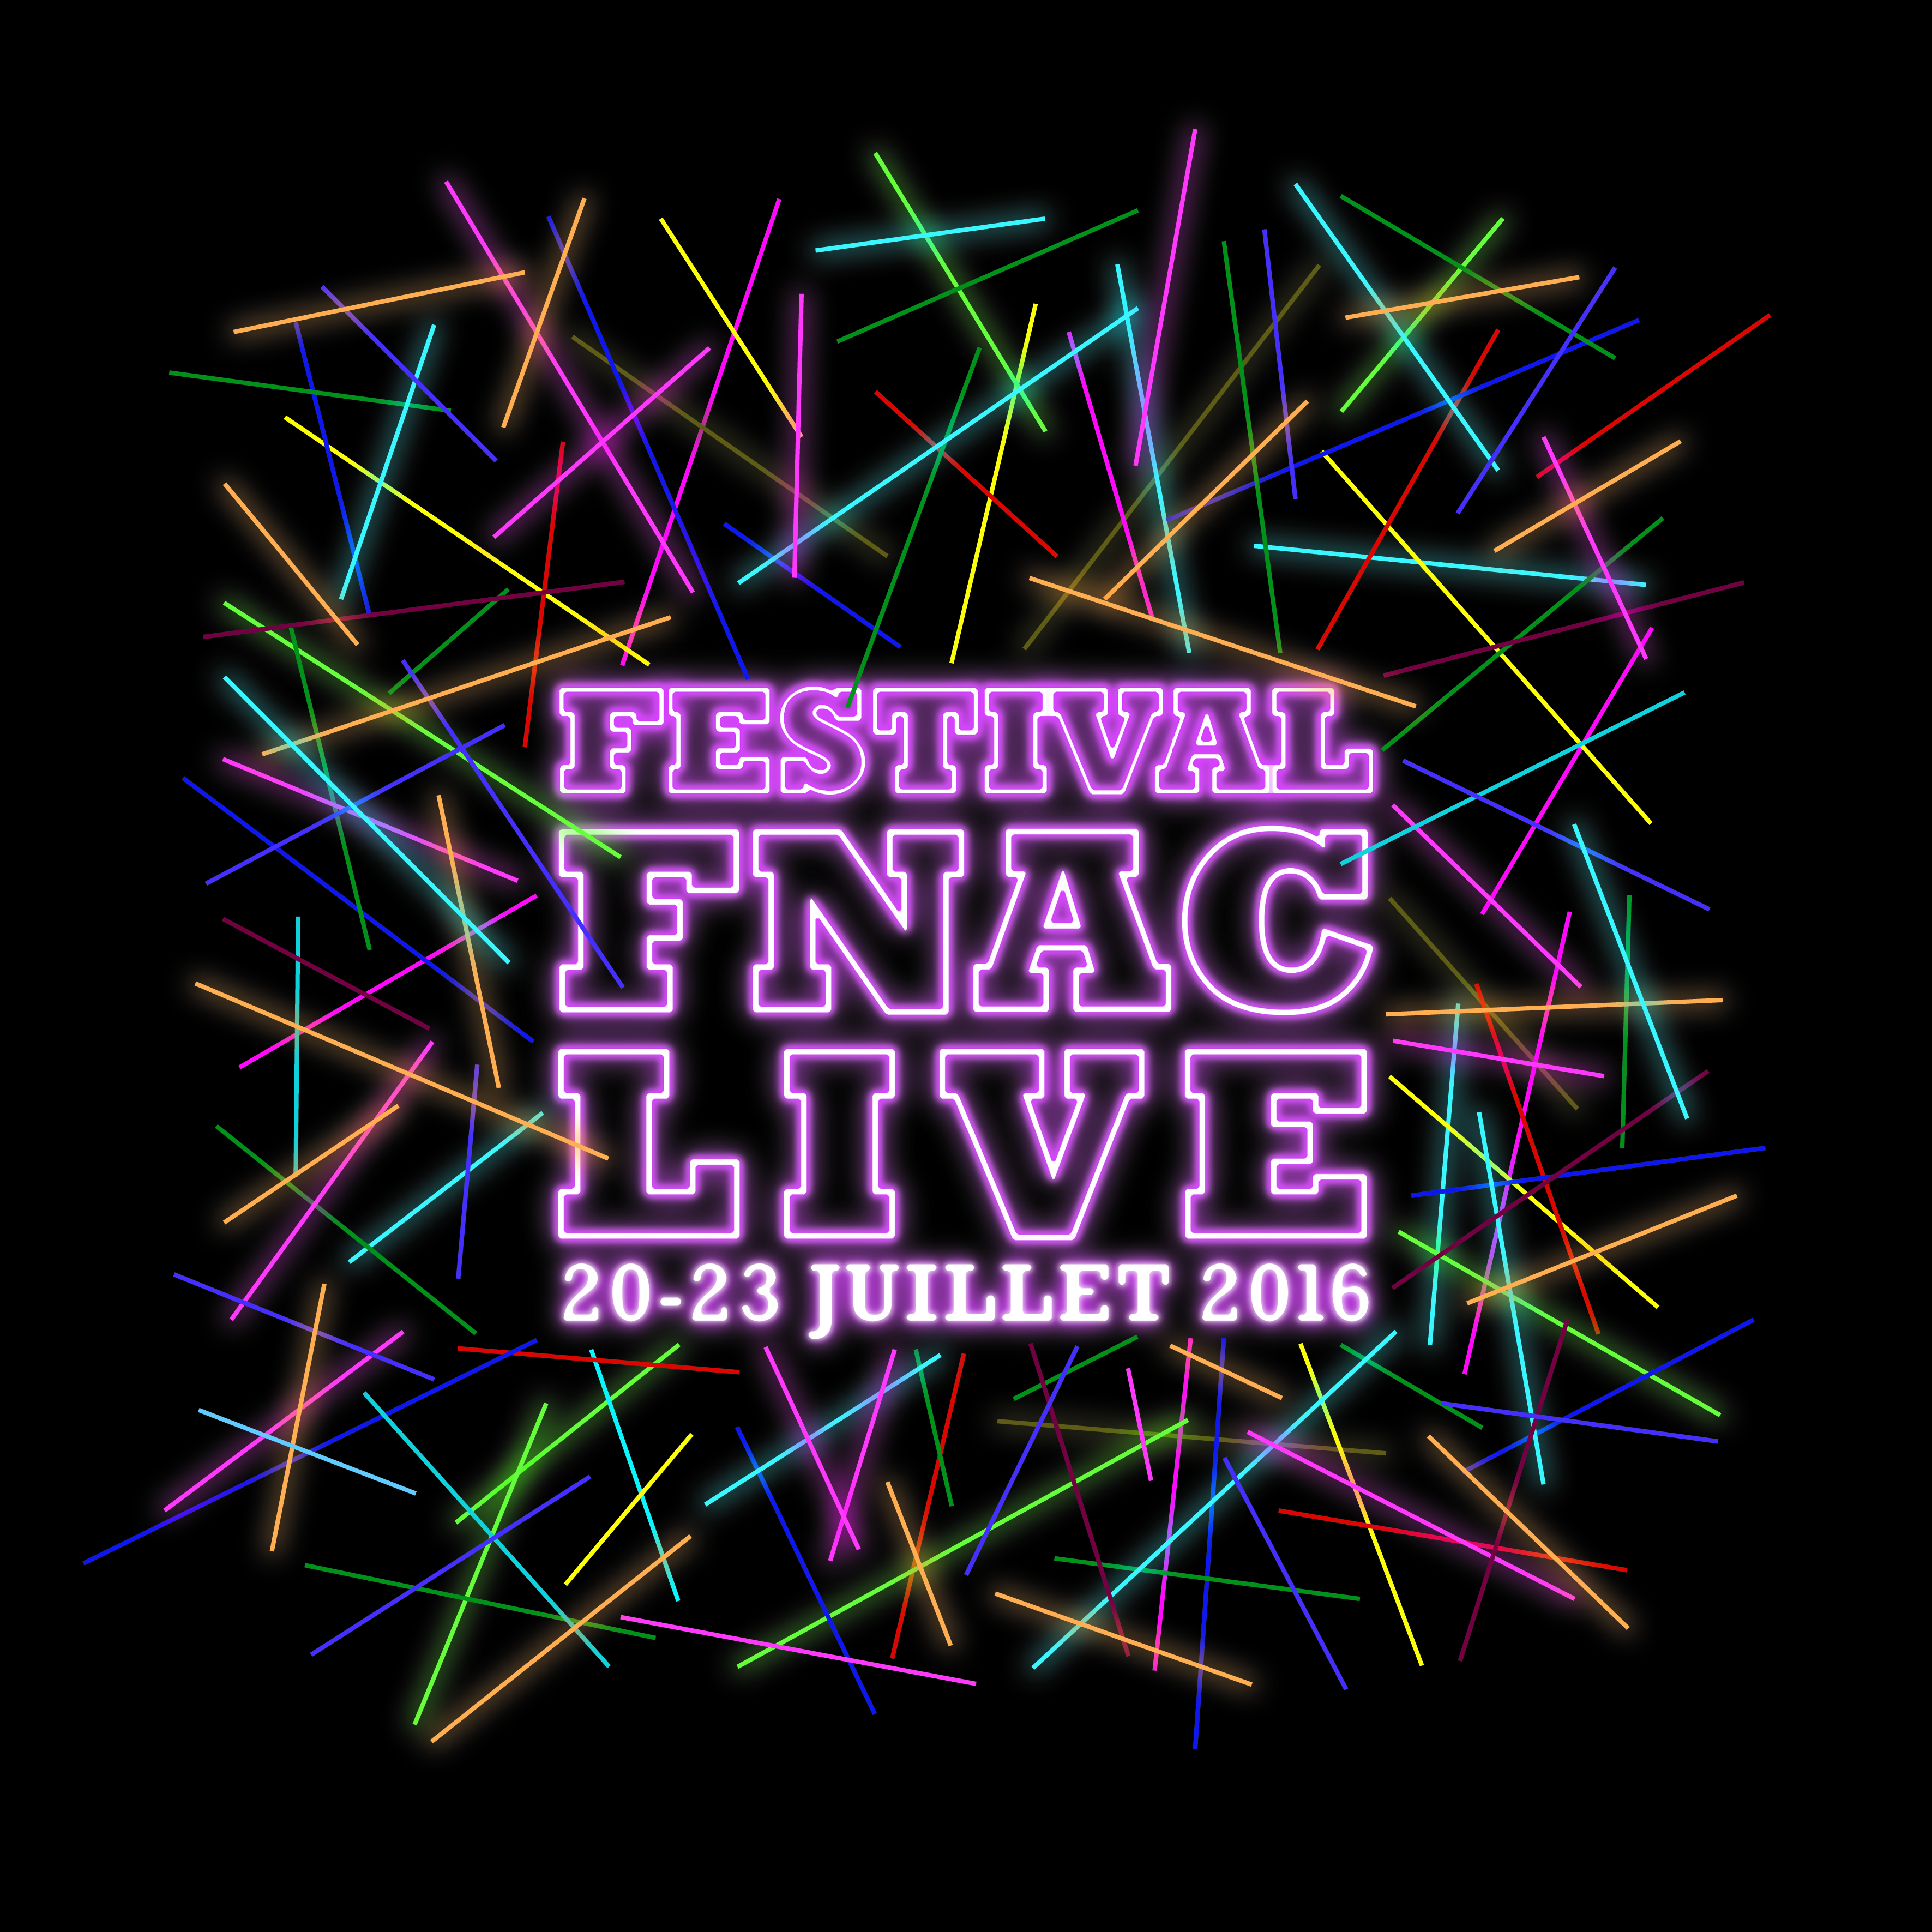 Festival Fnac live